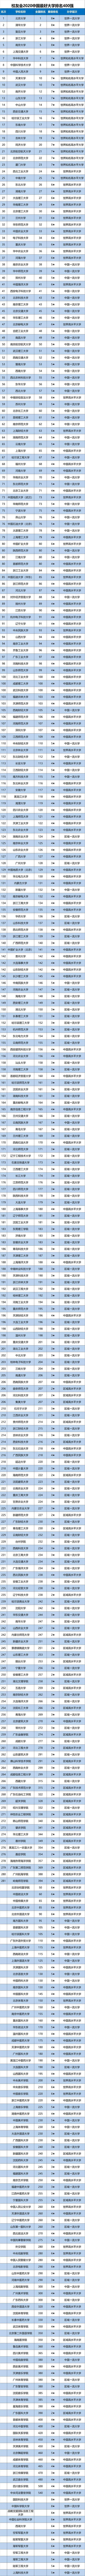 全国大学2020年最新_最新发布2020年中国最好大学排名,2020年中国最好大学